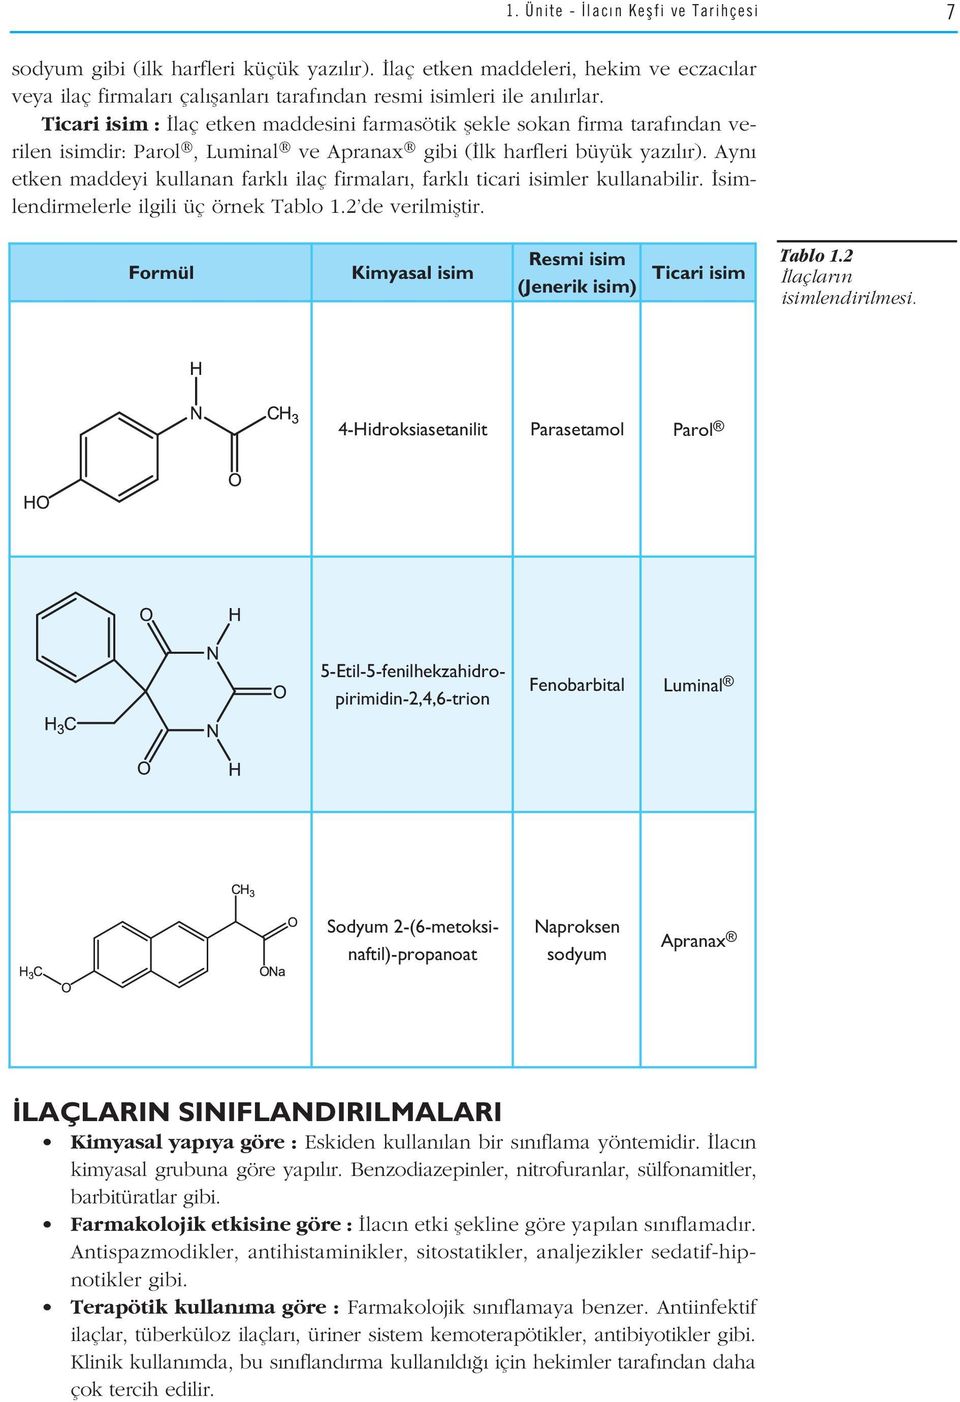 Ayn etken maddeyi kullanan farkl ilaç firmalar, farkl ticari isimler kullanabilir. simlendirmelerle ilgili üç örnek Tablo 1.2 de verilmifltir.